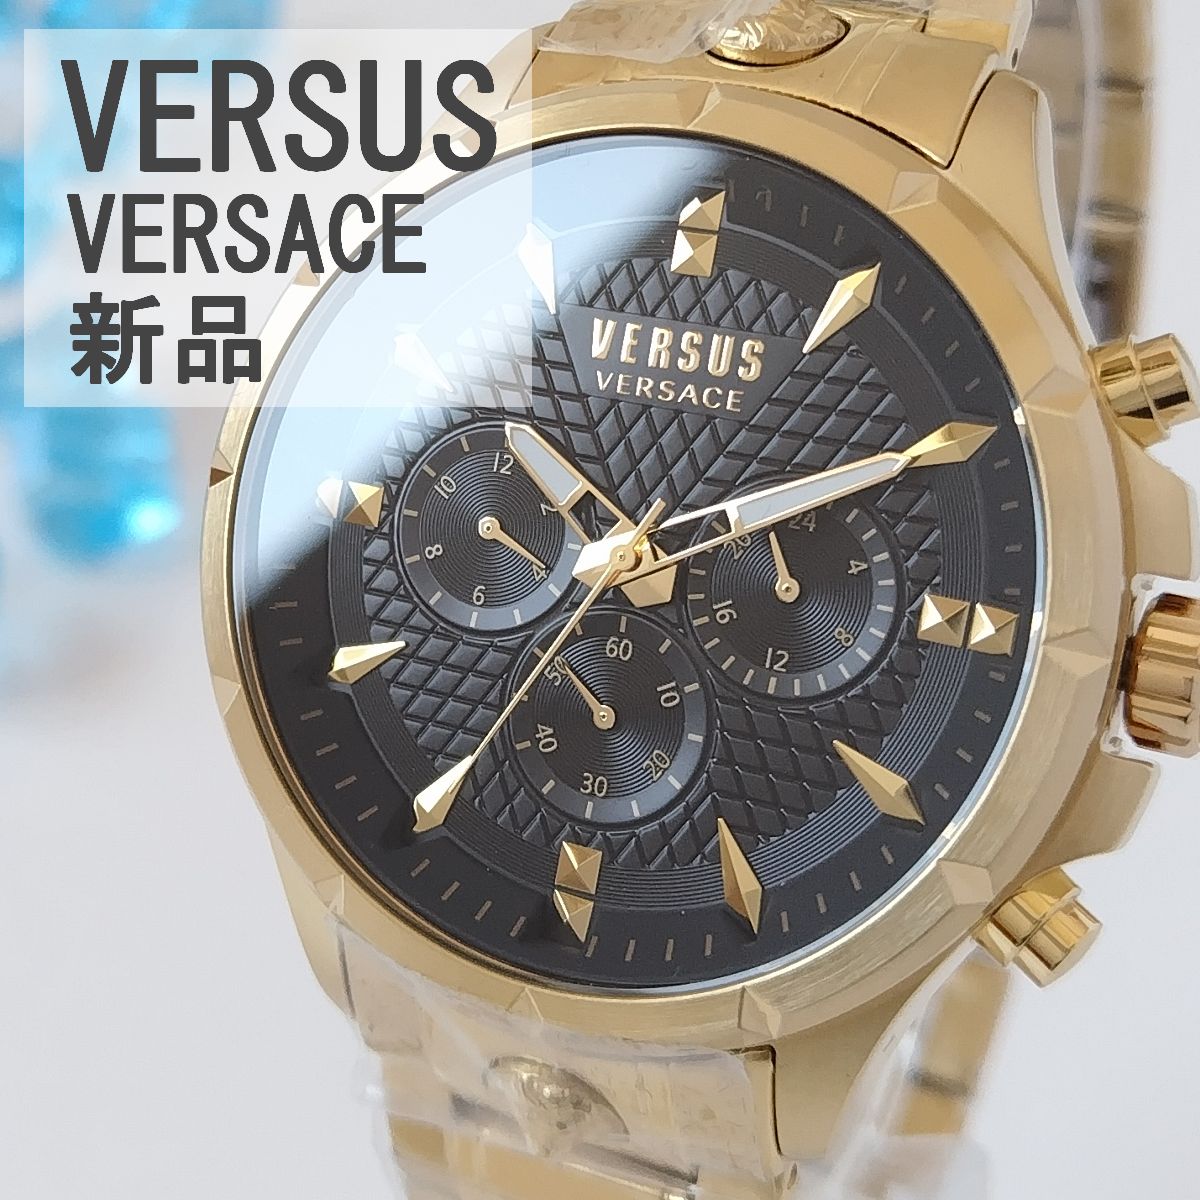 ゴールド/黒 新品ヴェルサス・ヴェルサーチ腕時計メンズ クロノグラフ ...